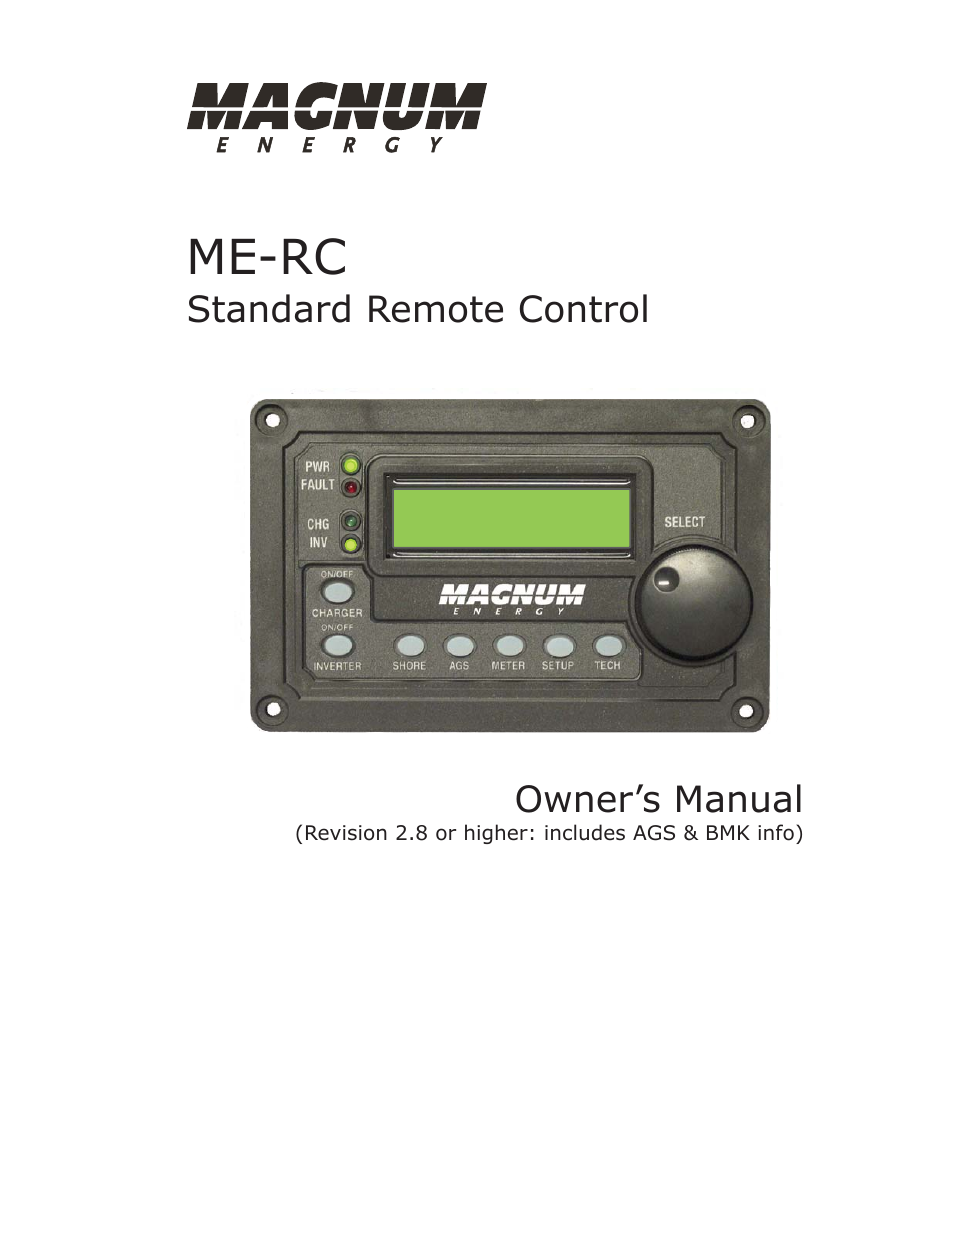 ME-RC Remote